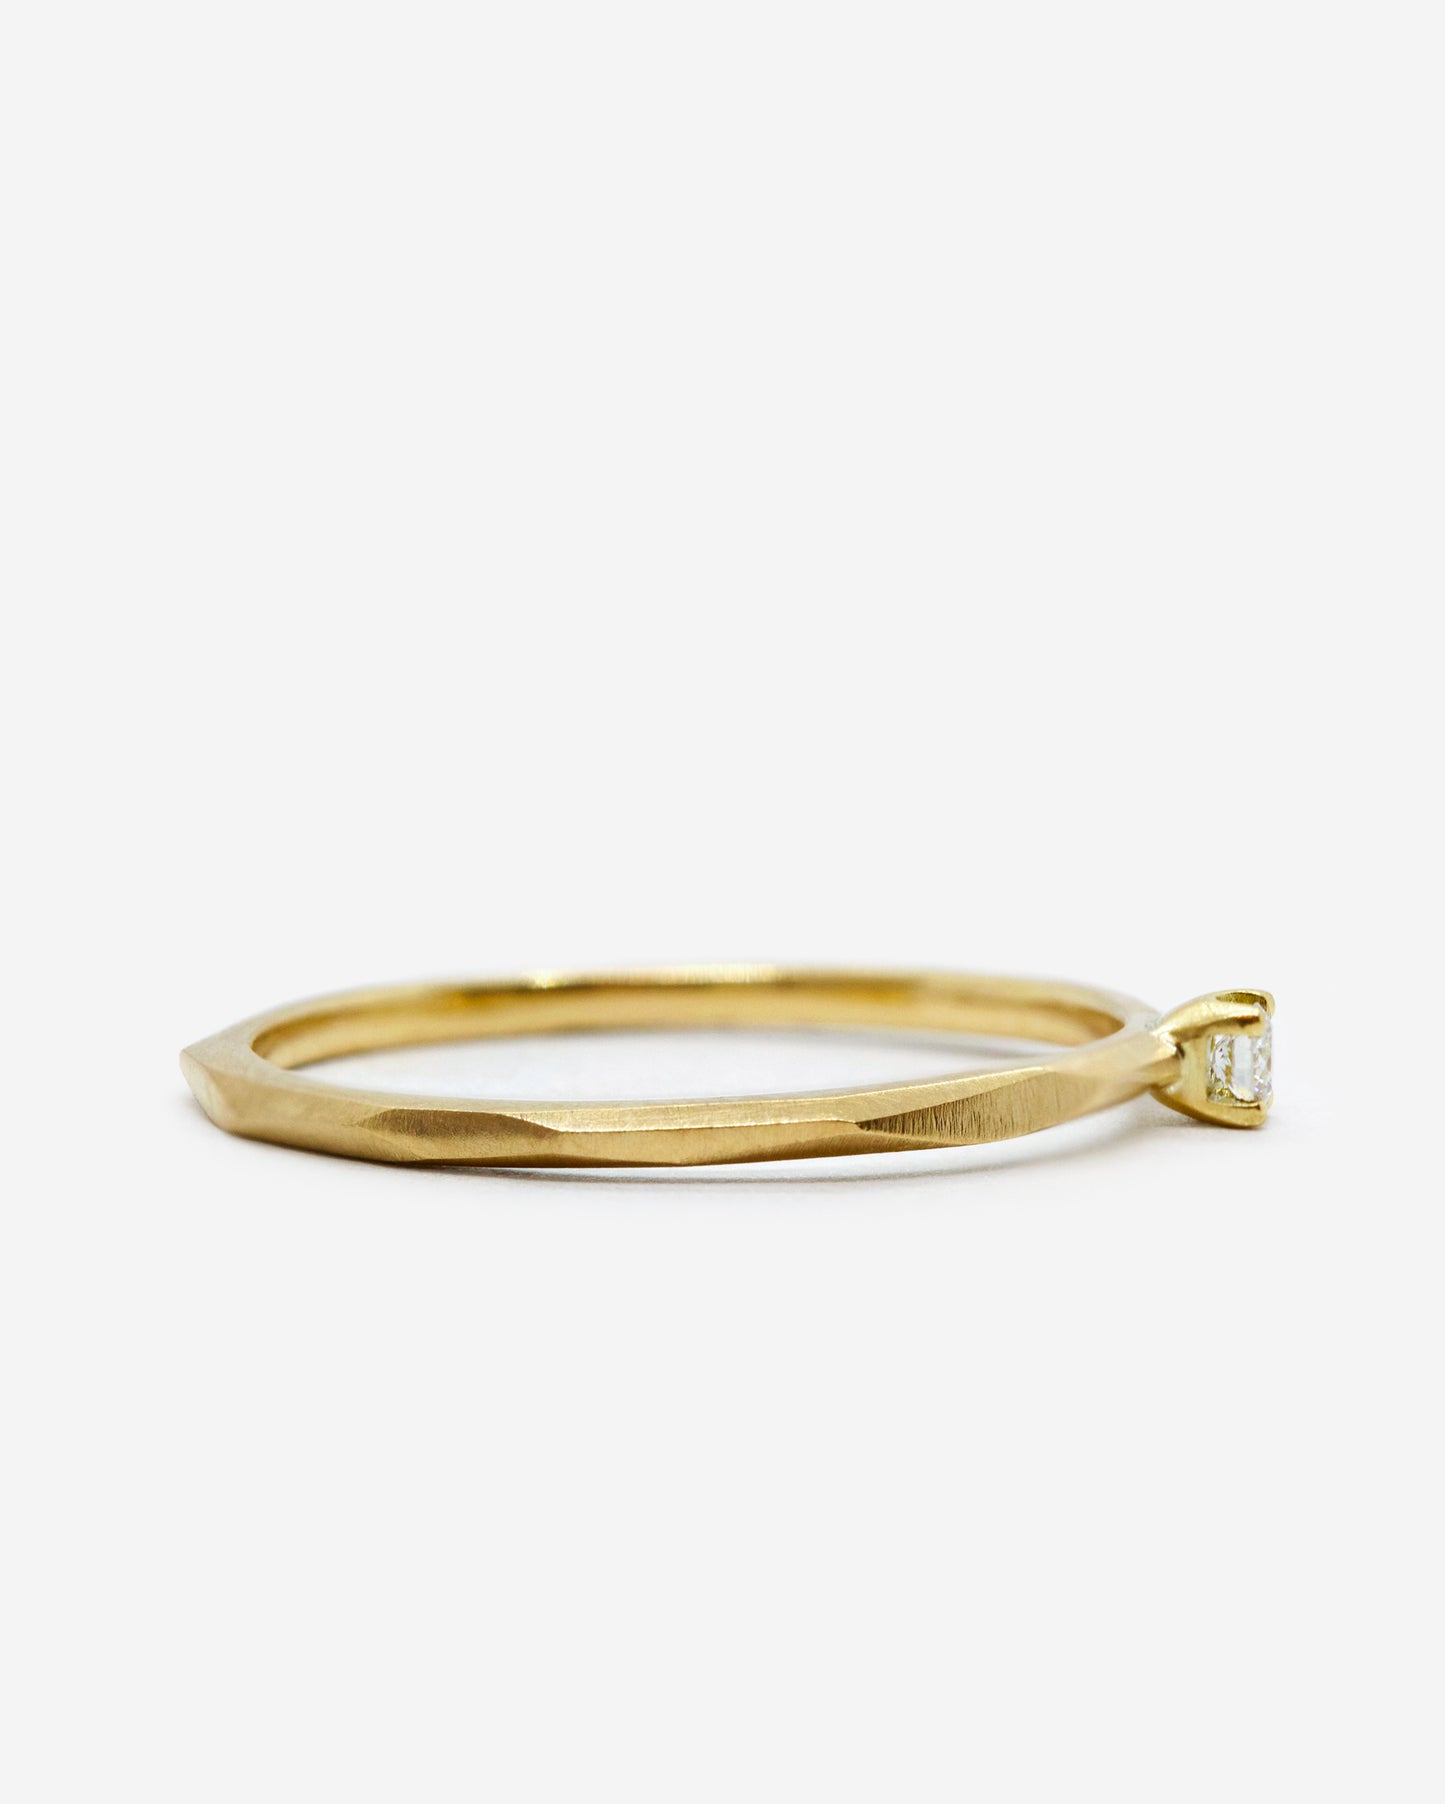 18k fairmined gouden fijne Rock ring met klein wit diamantje